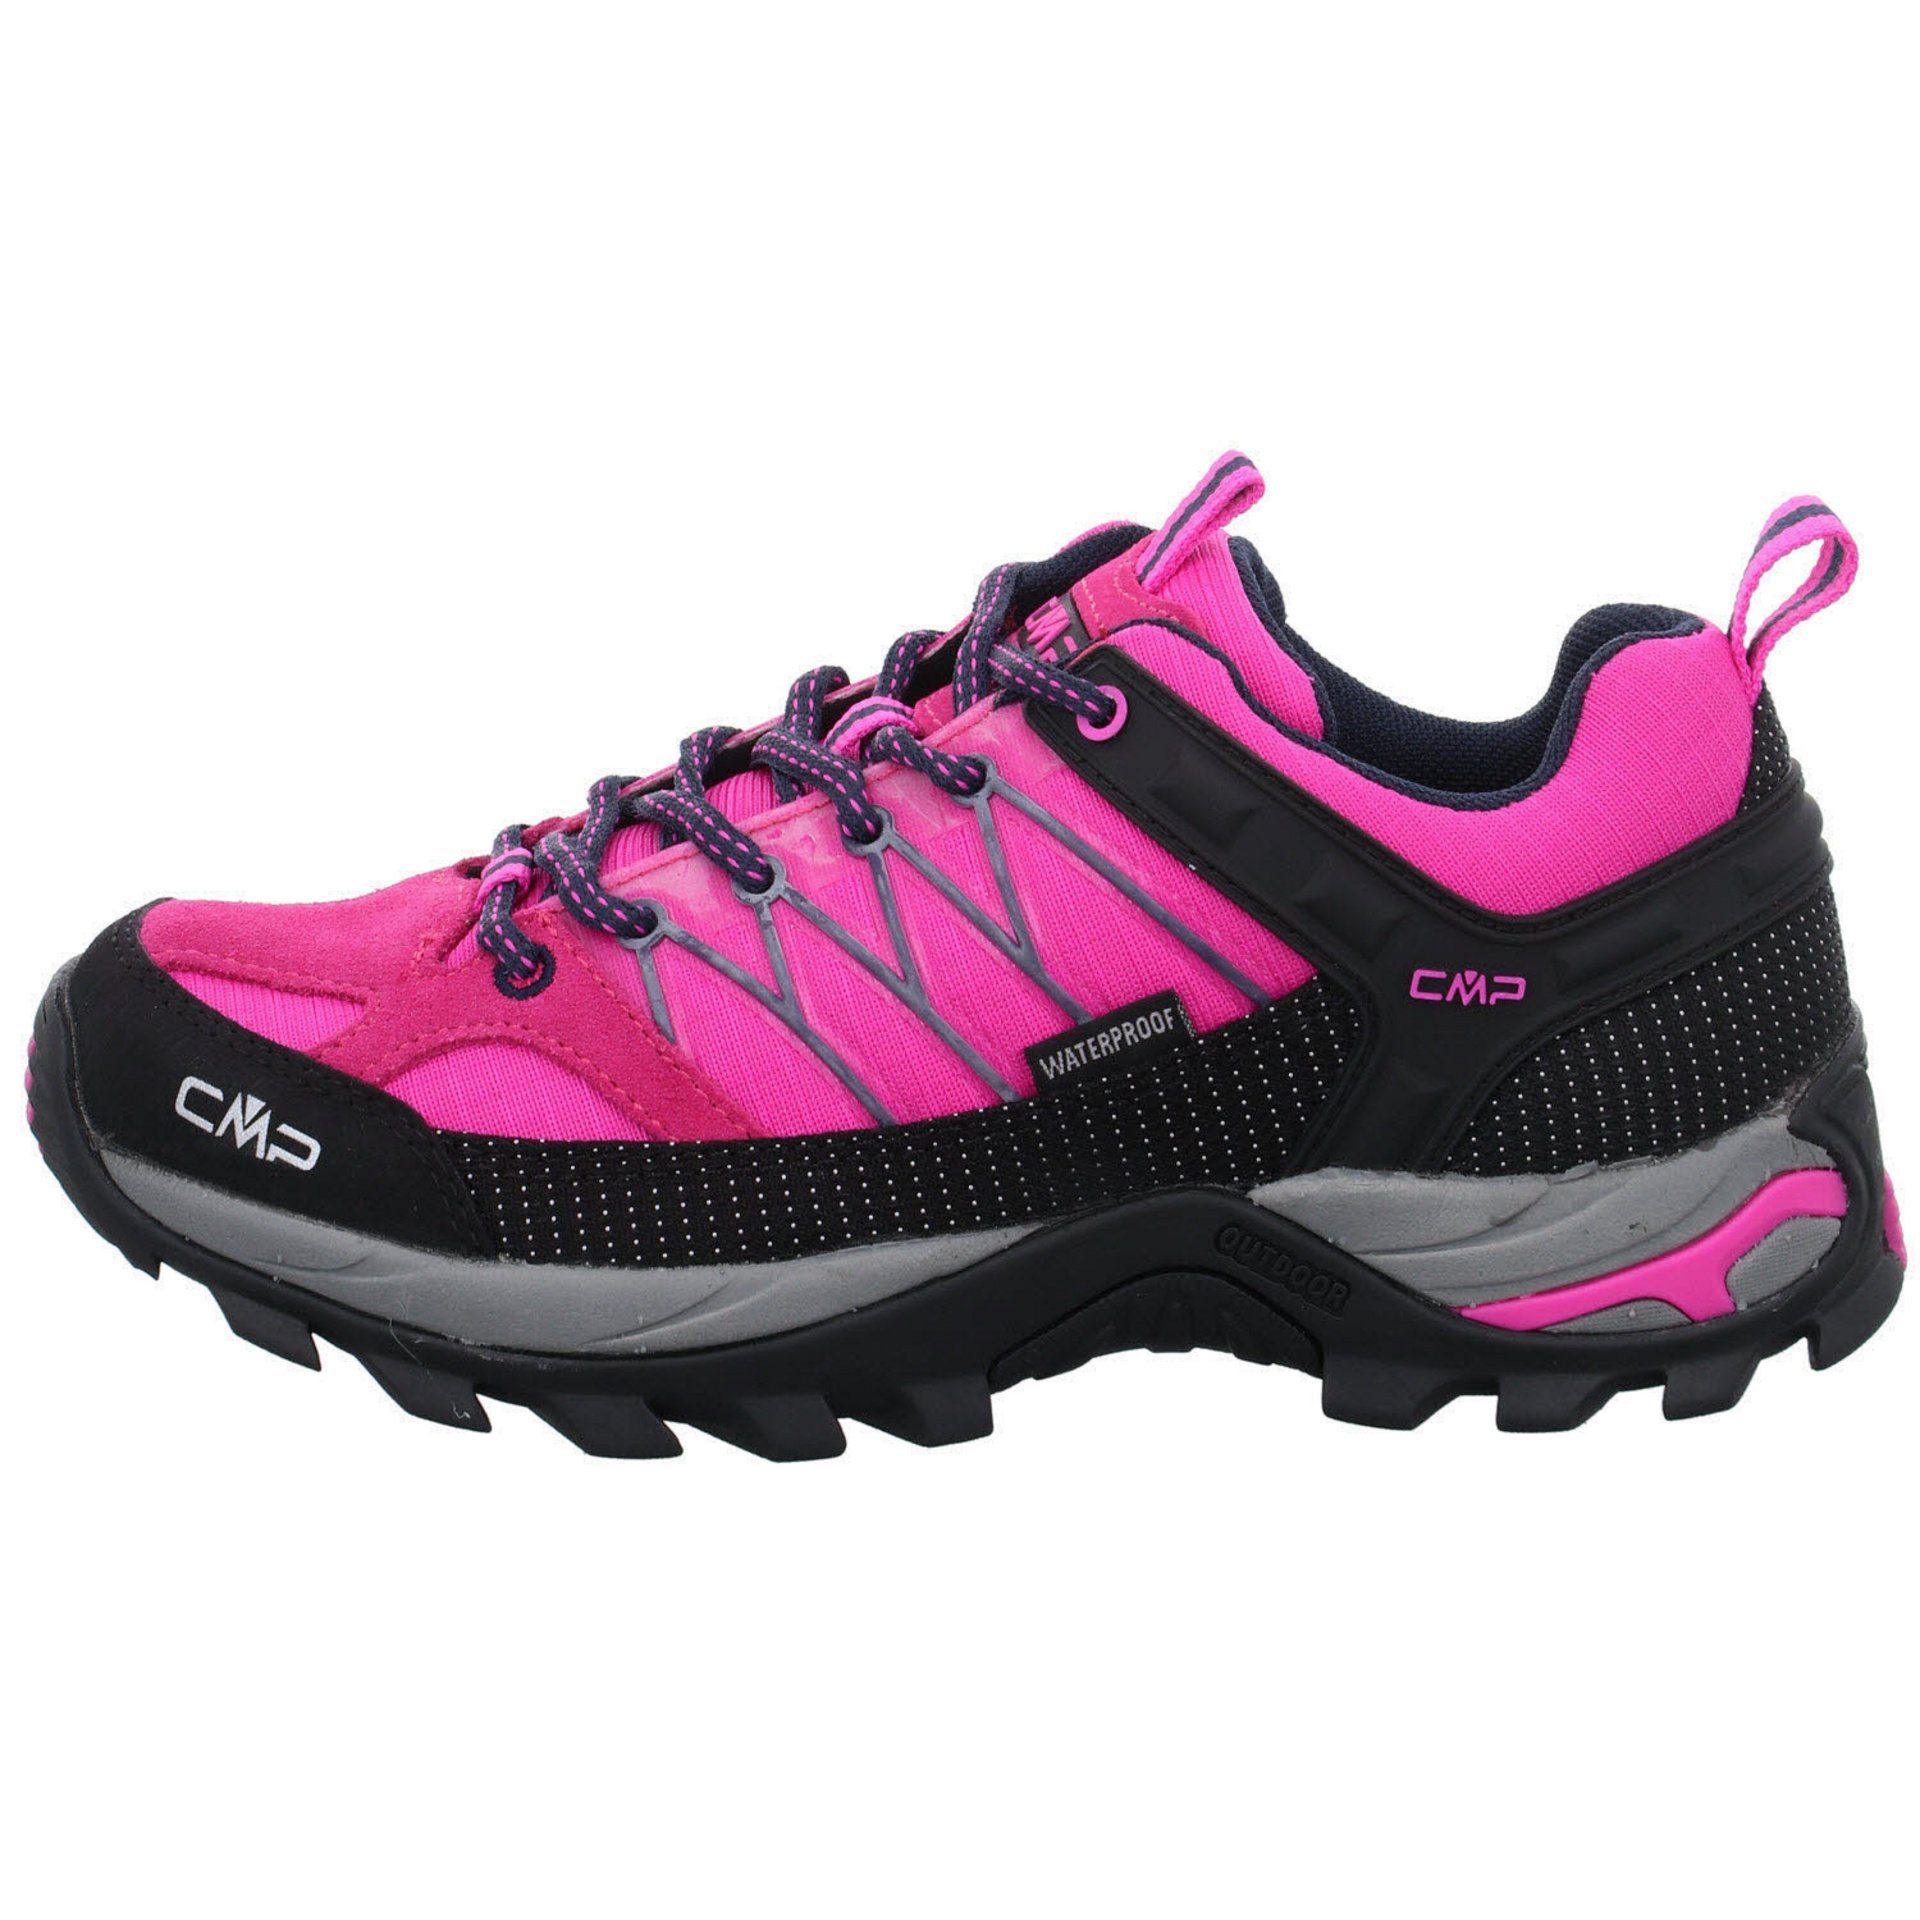 CMP Damen Outdoor Low Rigel pink (03201886) fluo-b.blue Schuhe Leder-/Textilkombination Outdoorschuh Outdoorschuh